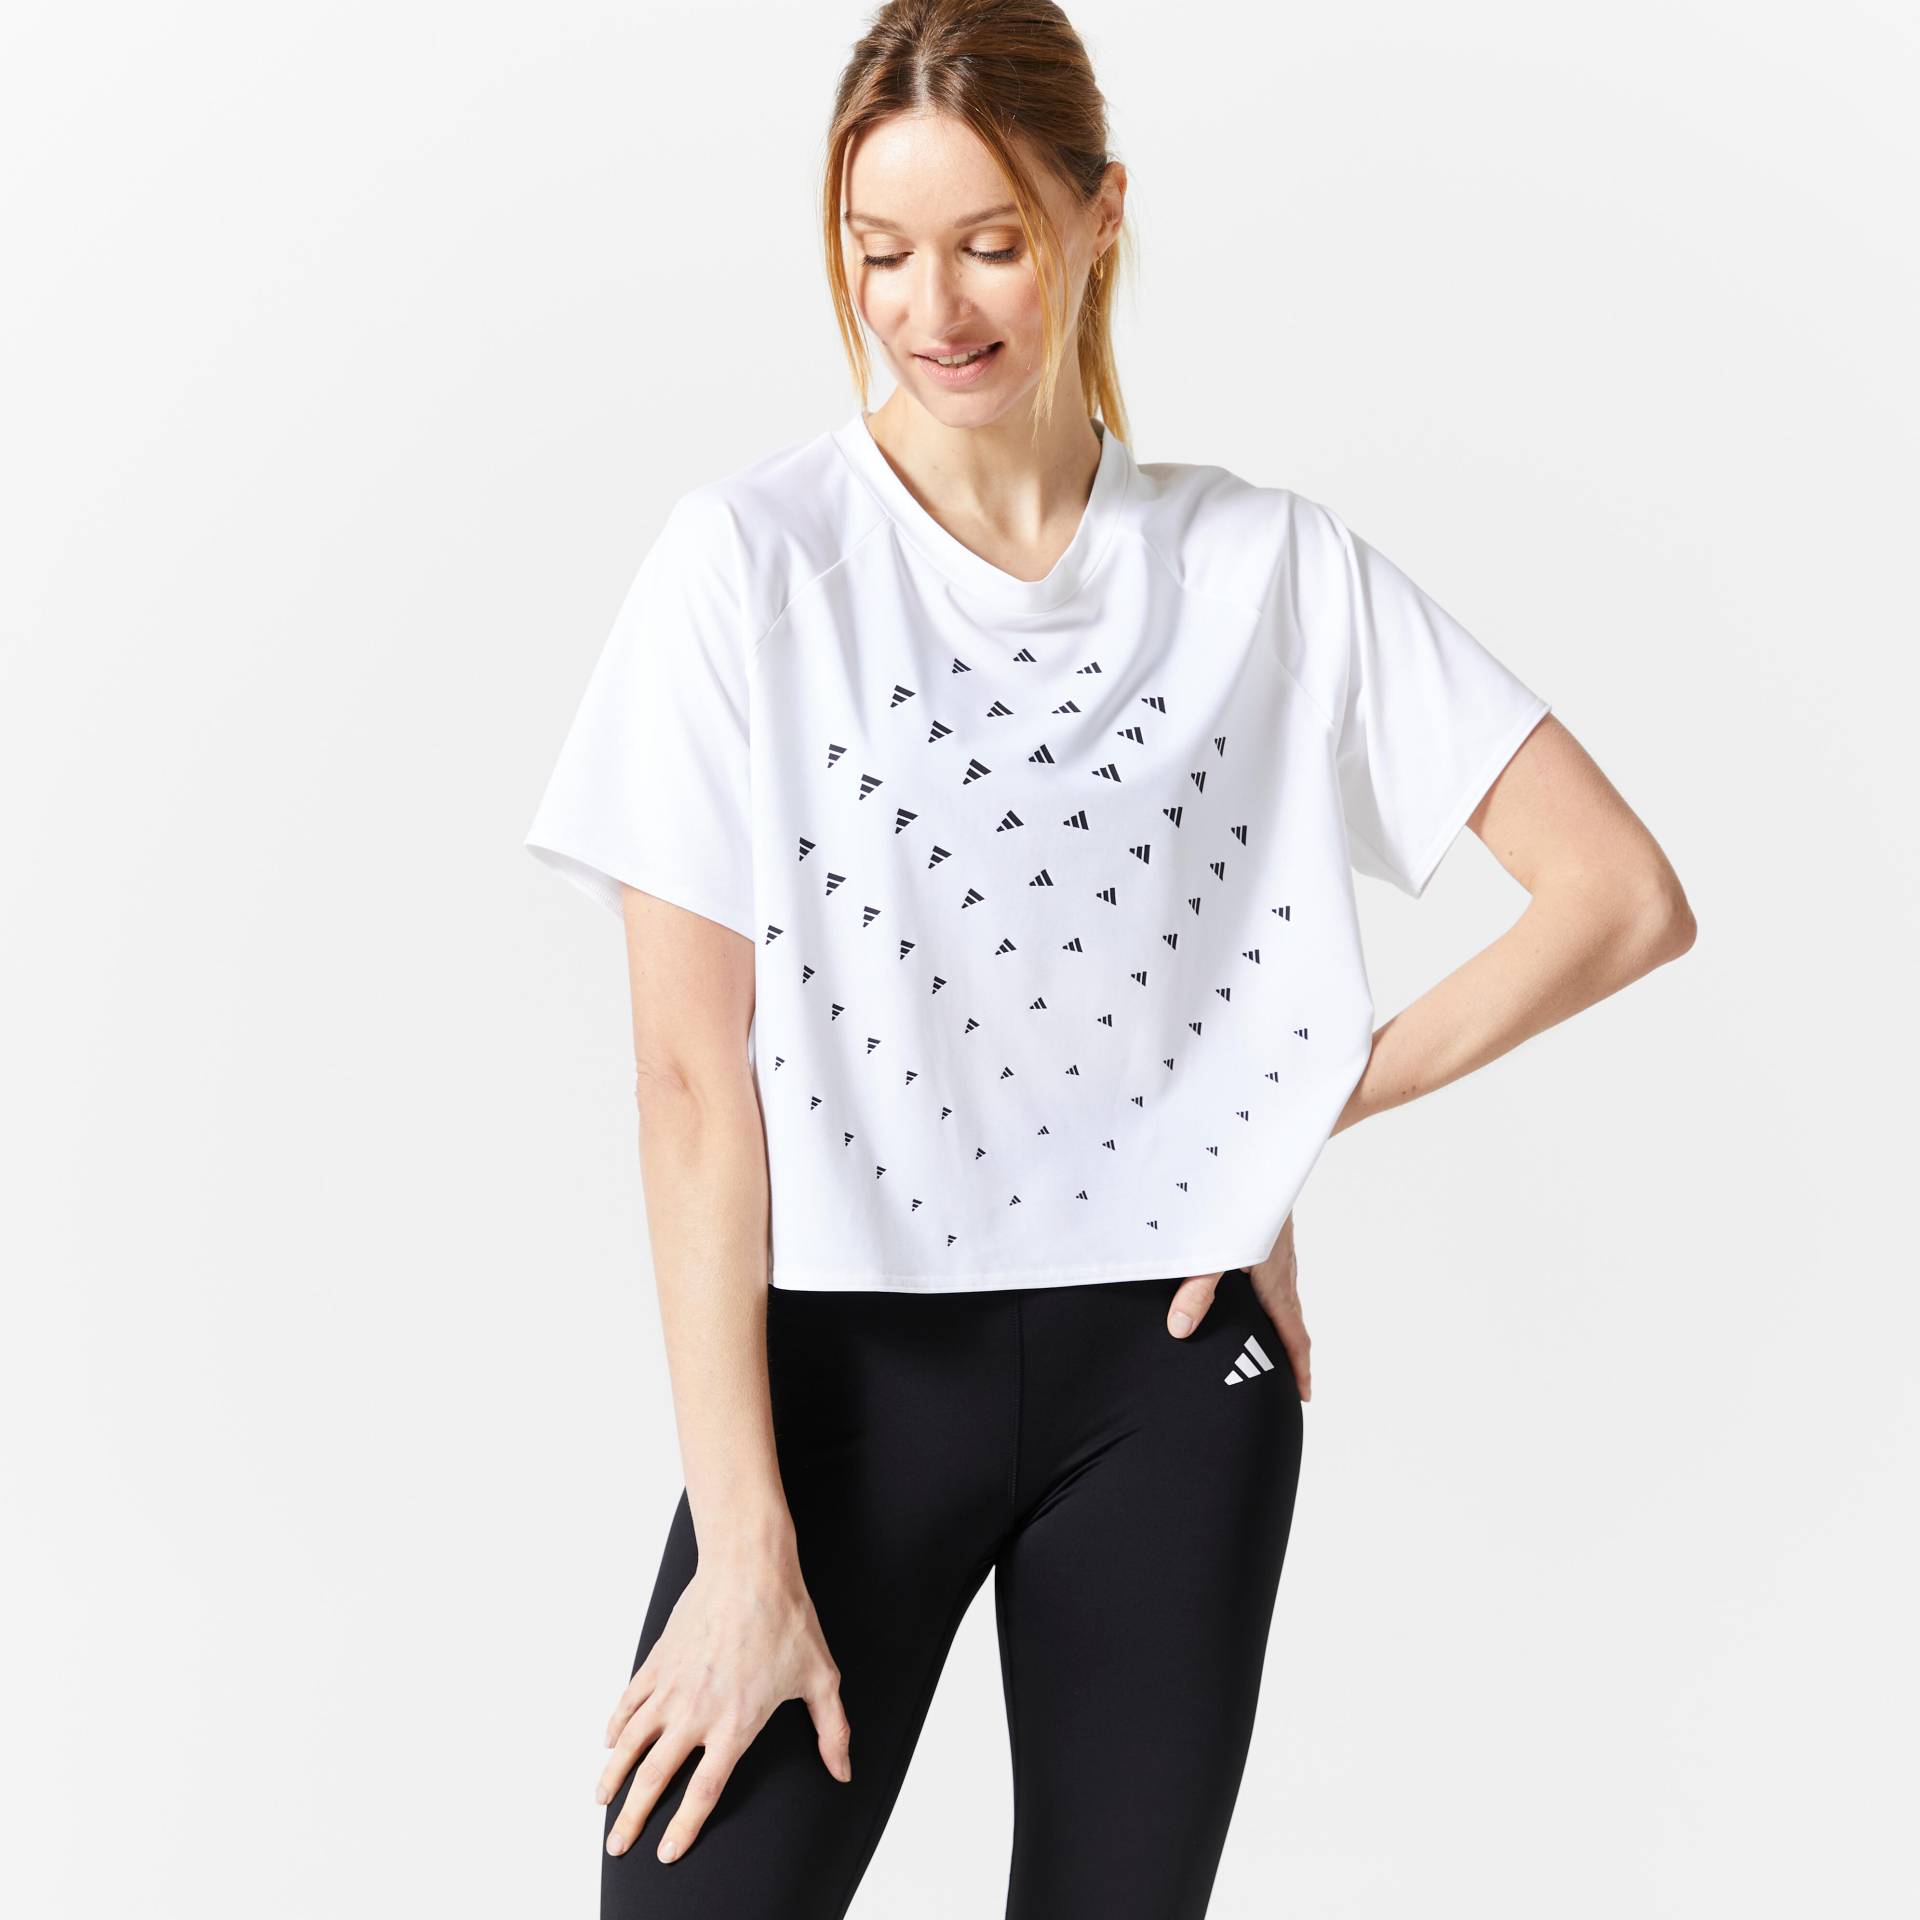 ADIDAS T-Shirt Damen - weiss von Adidas